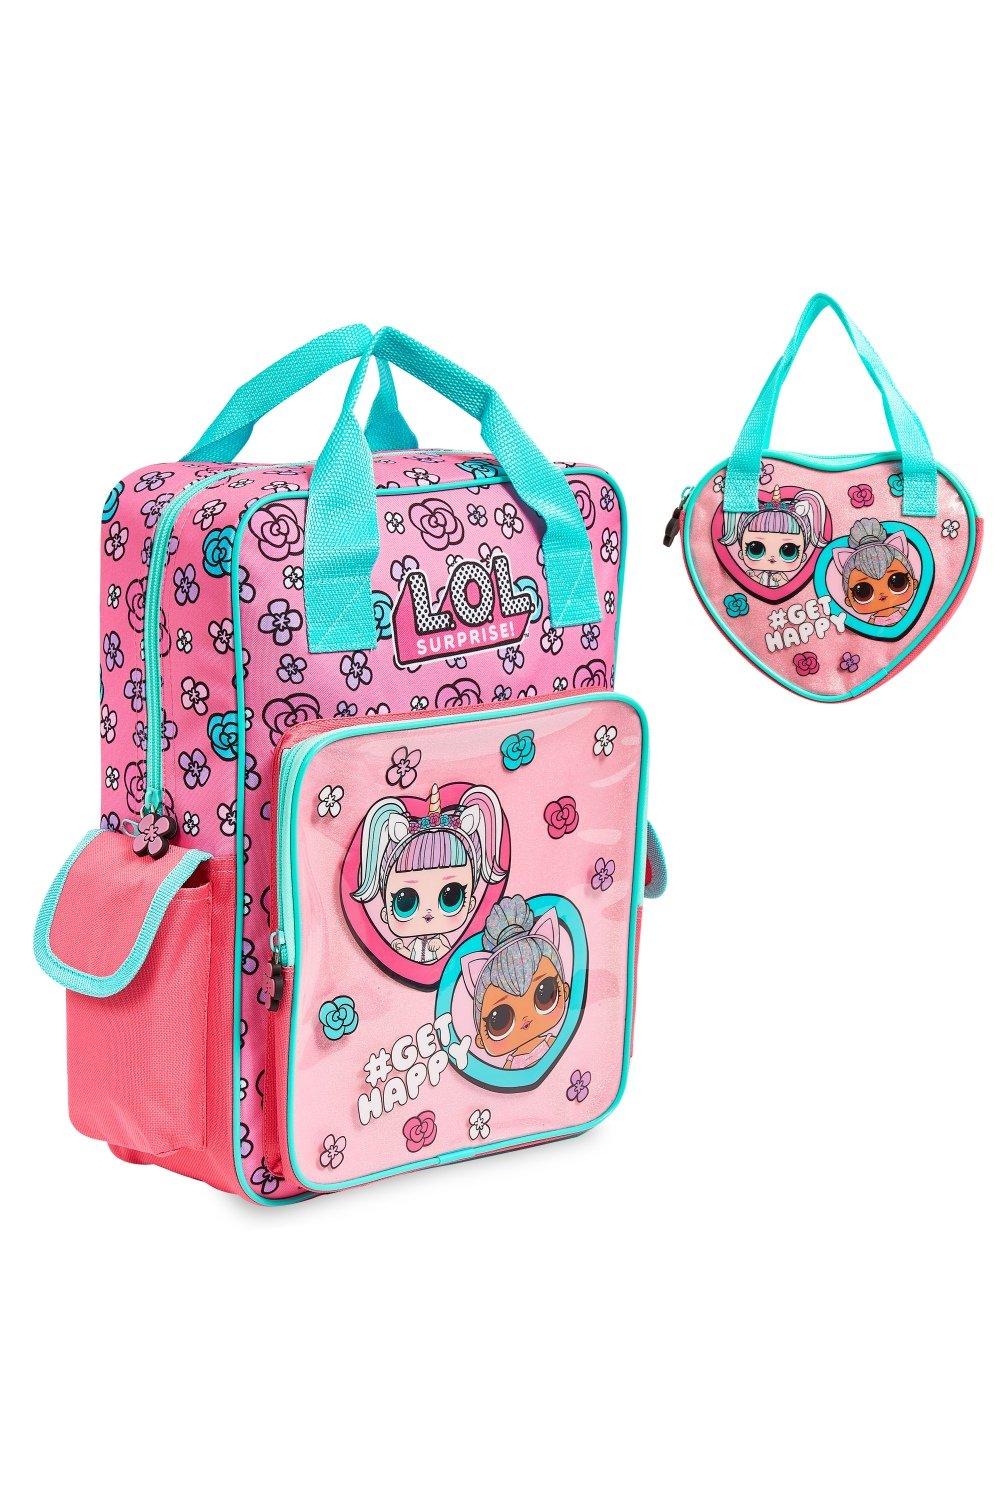 Сумочка и рюкзак Unicorn and Kitty Queen L.O.L. Surprise, розовый сумка для детского сада милый детский рюкзак школьные ранцы для малышей